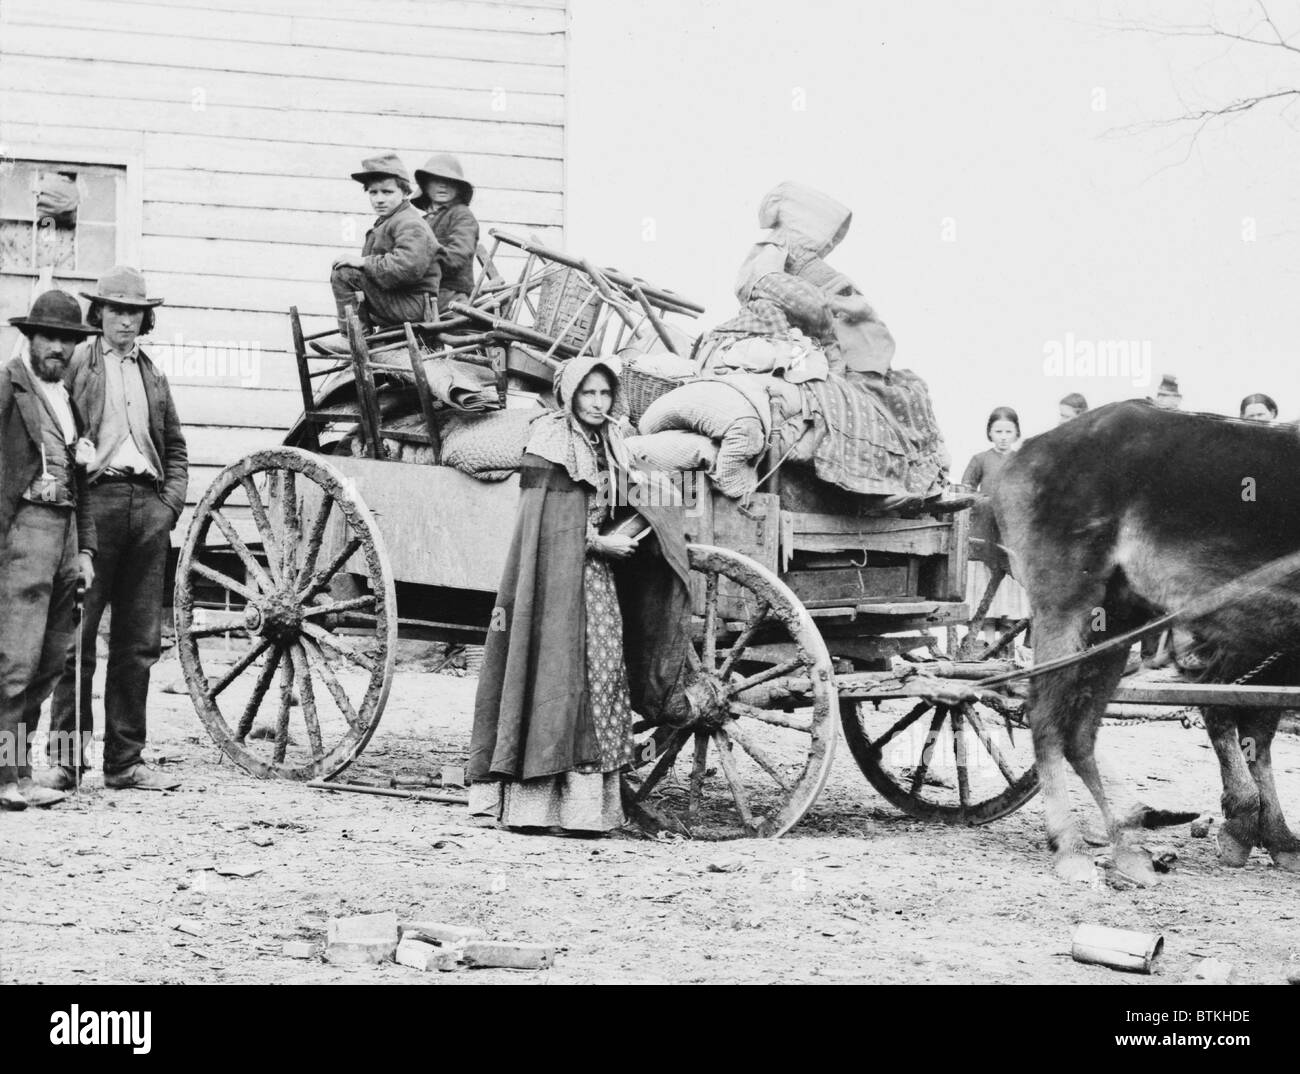 Abfahrt von THE OLD HOMESTEAD, zeigt eine 1862 Foto von George Barnard eine amerikanische Familie in Bewegung während des Bürgerkrieges. Die Pfeife rauchende Frau möglicherweise ein Nachkomme des ersten schottisch-irischer Siedler, die Appalachen im 18. Jahrhundert besiedelt, und deren Frauen rauchten Rohre ins 20. Jahrhundert. Stockfoto